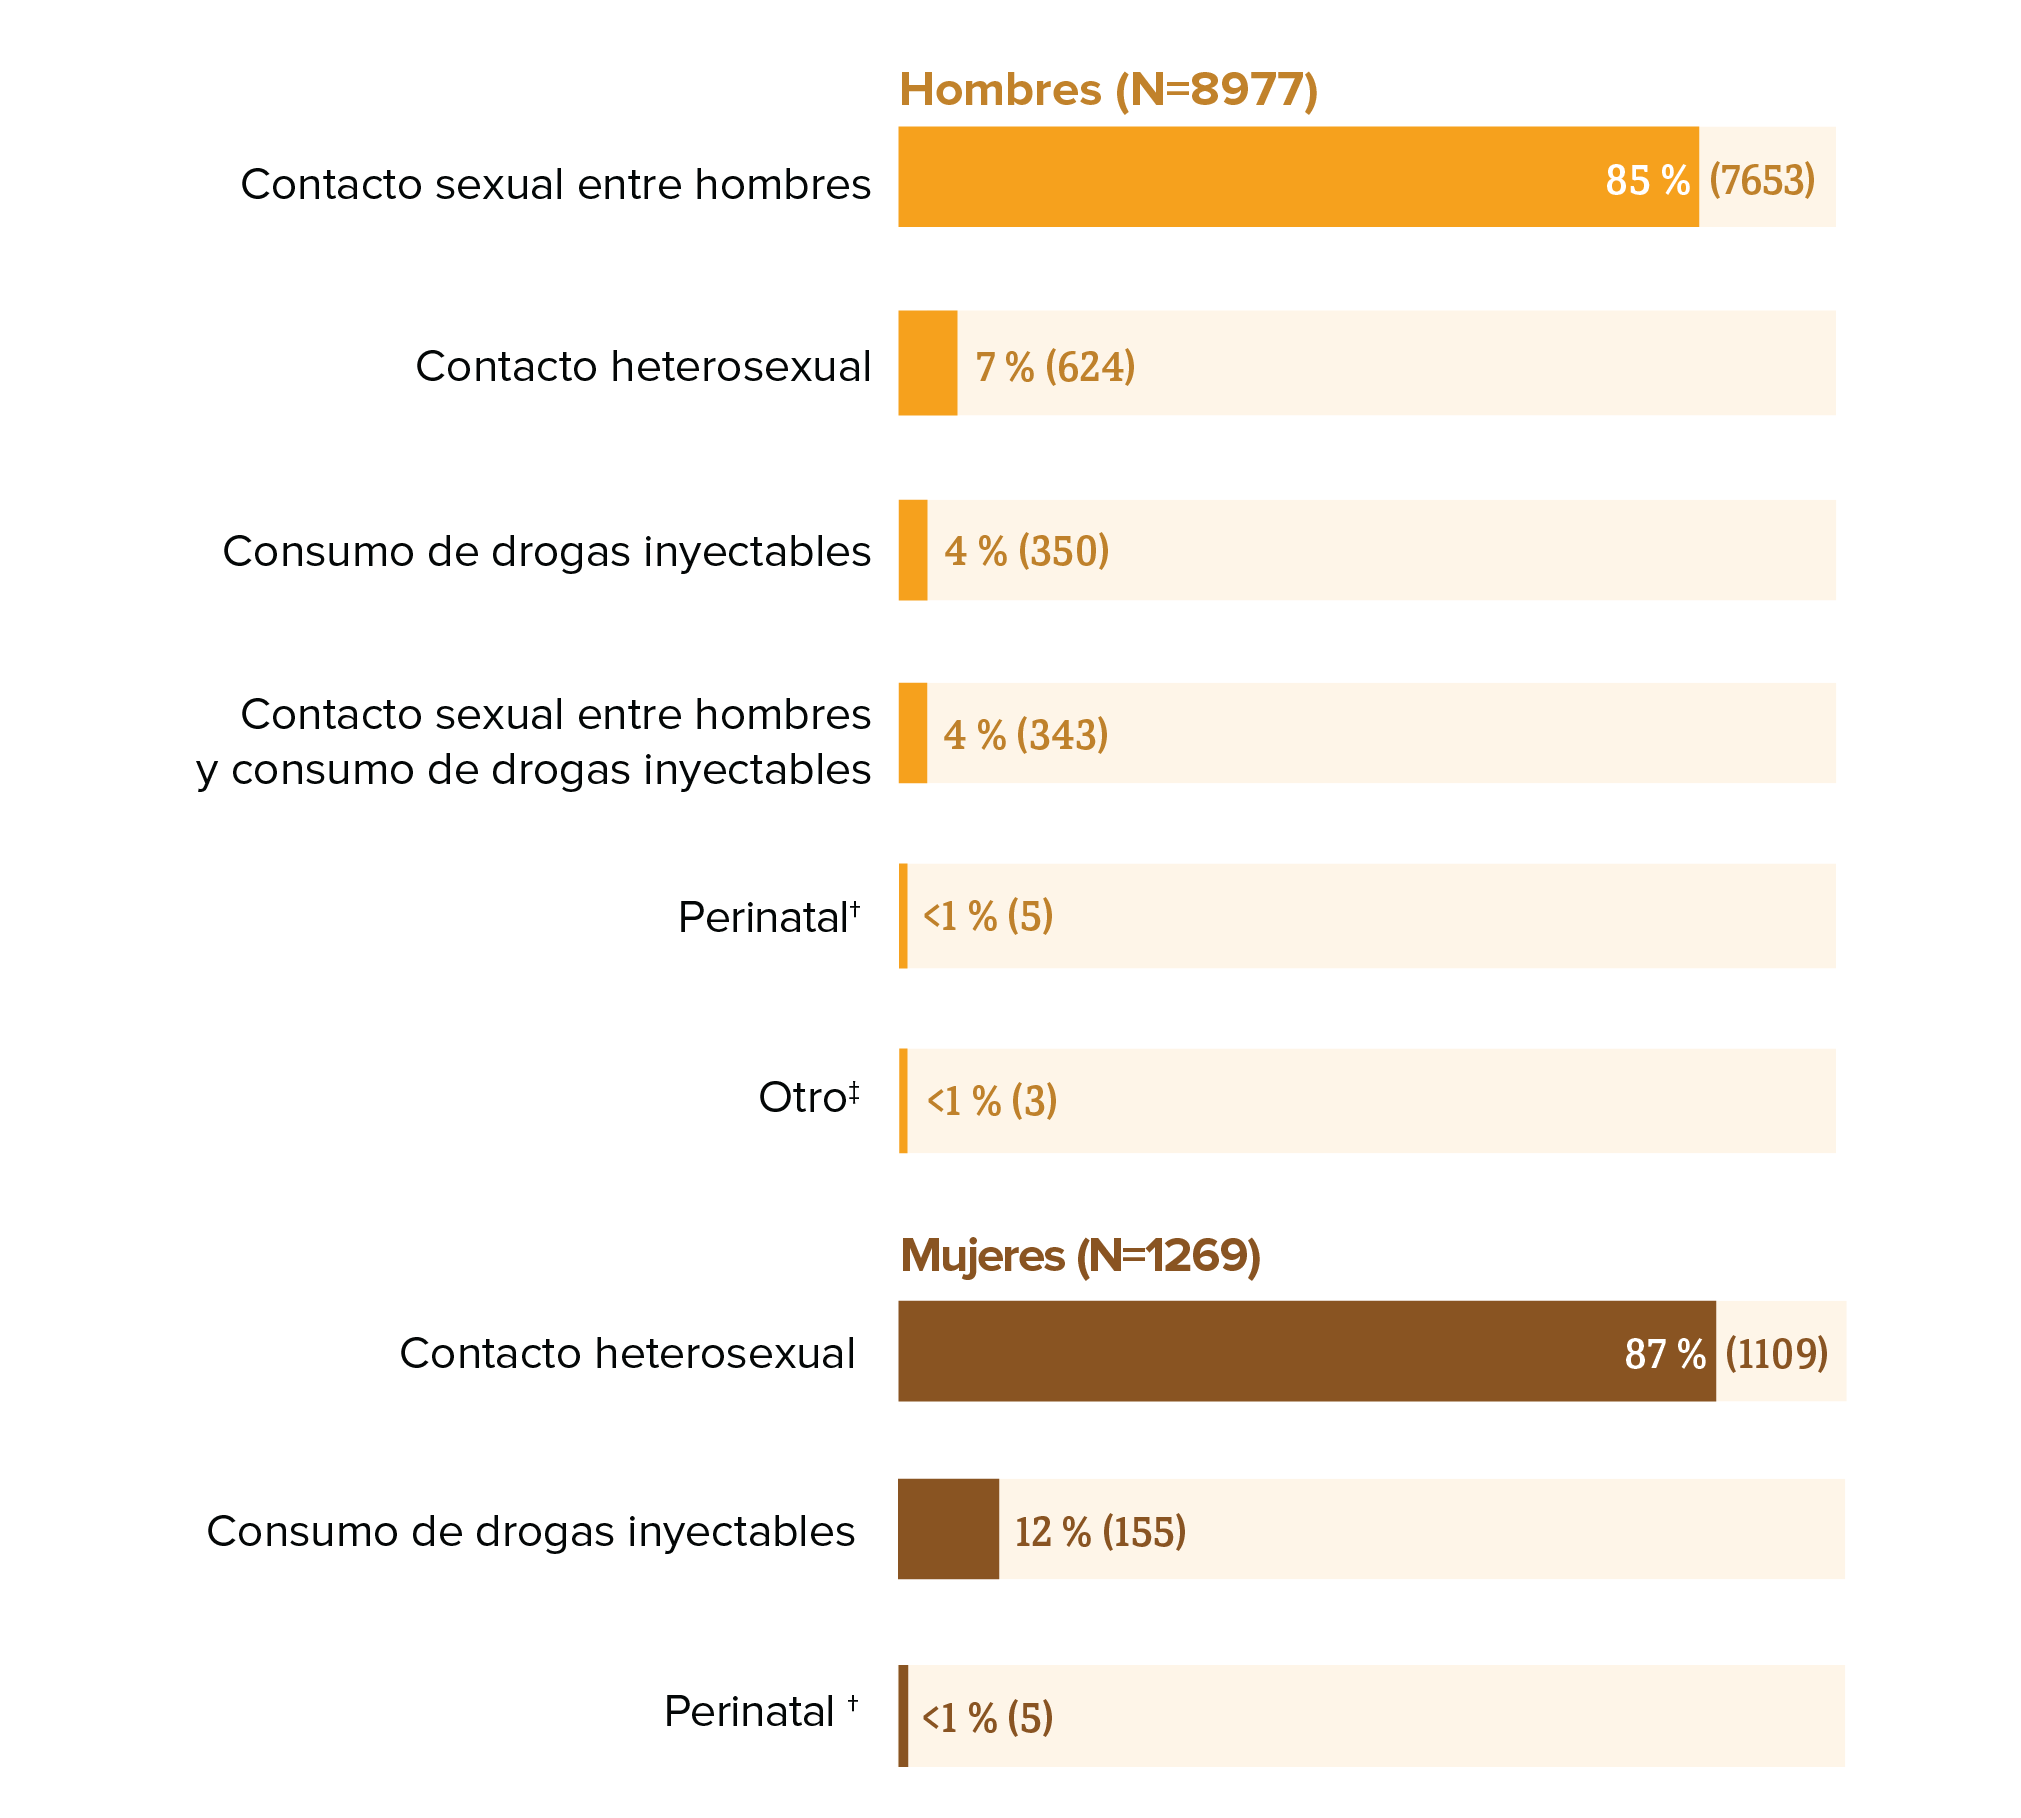 Diagnósticos nuevos de infección por el VIH entre los hombres hispanos o latinos por categoría de transmisión, en los Estados Unidos y áreas dependientes en el 2018. Entre los hombres hispanos o latinos, el 85 por ciento de los diagnósticos se atribuyeron al contacto sexual entre hombres; el 7 por ciento al contacto heterosexual, el 4 por ciento al contacto sexual entre hombres y consumo de drogas inyectables, el 4 por ciento al consumo de drogas inyectables, menos del 1 por ciento a la transmisión perinatal, y menos del 1 por ciento a otro modo de transmisión.  Diagnósticos nuevos de infección por el VIH entre mujeres hispanas o latinas por categoría de transmisión, en los Estados Unidos y áreas dependientes en el 2018. Entre las mujeres hispanas o latinas, el 87 por ciento de los diagnósticos se atribuyeron al contacto heterosexual, el 12 por ciento al consumo de drogas inyectables y menos del 1 por ciento a la transmisión perinatal. 